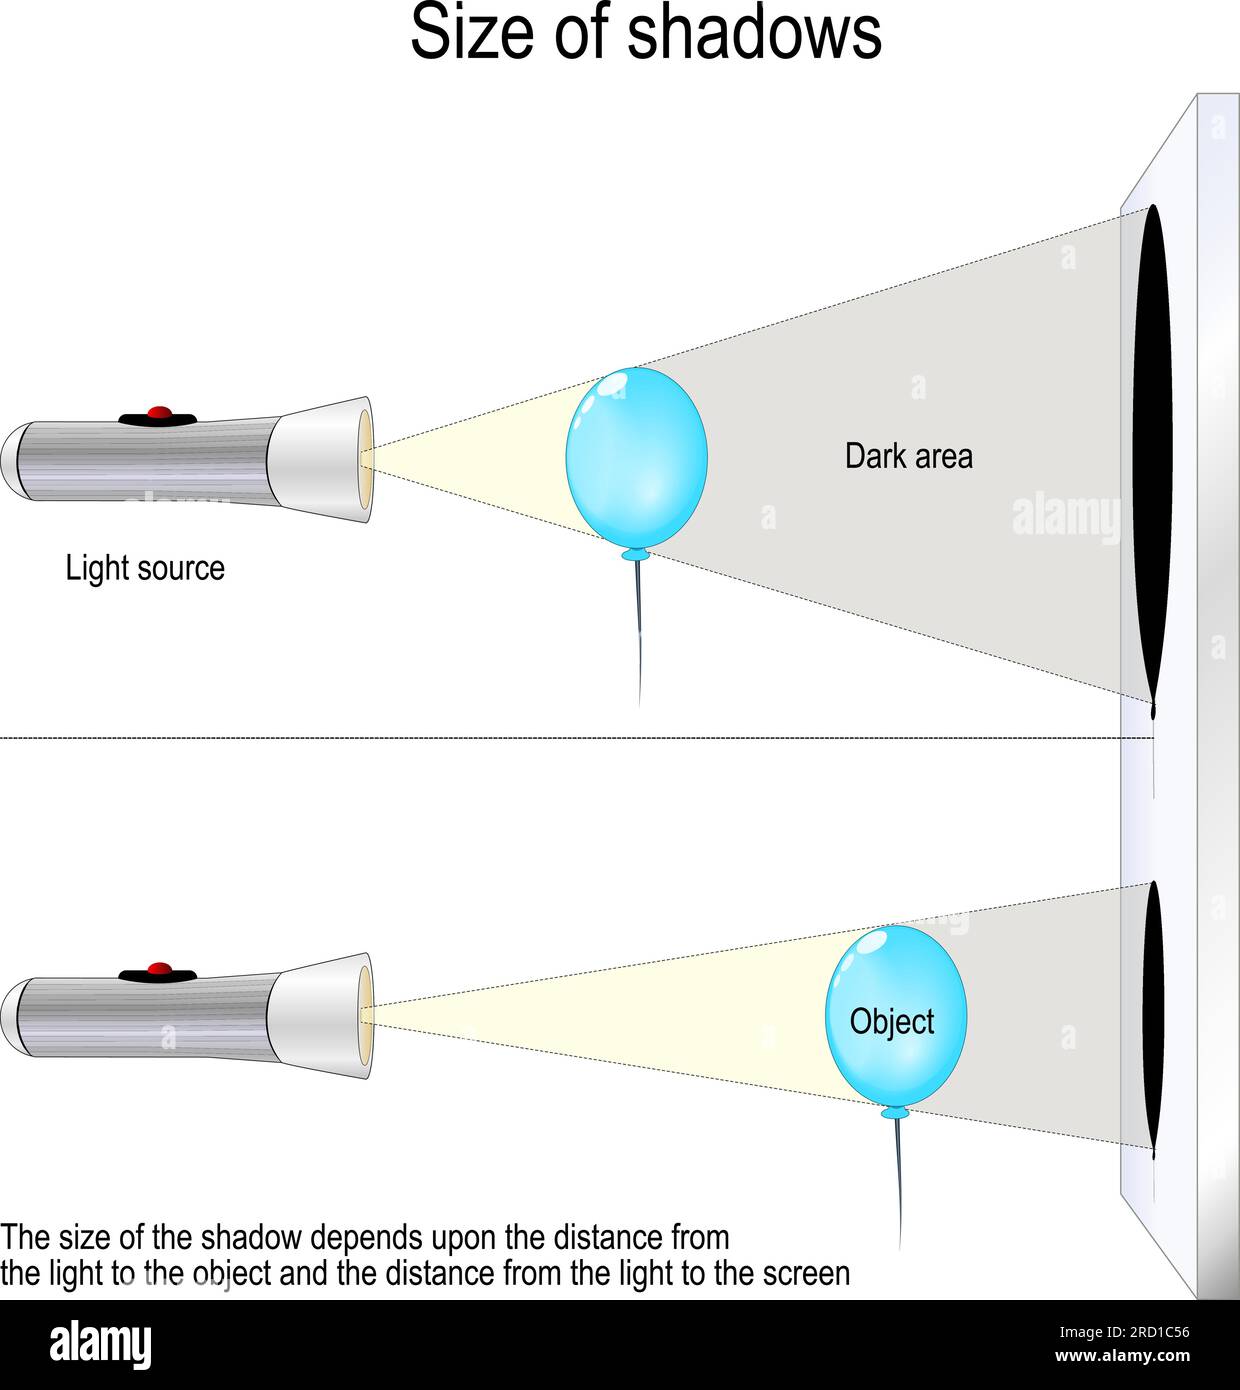 Dimensione delle ombre. esperimento scientifico con un pallone e una torcia. La dimensione dell'ombra dipende dalla distanza tra la luce e l'oggetto Illustrazione Vettoriale